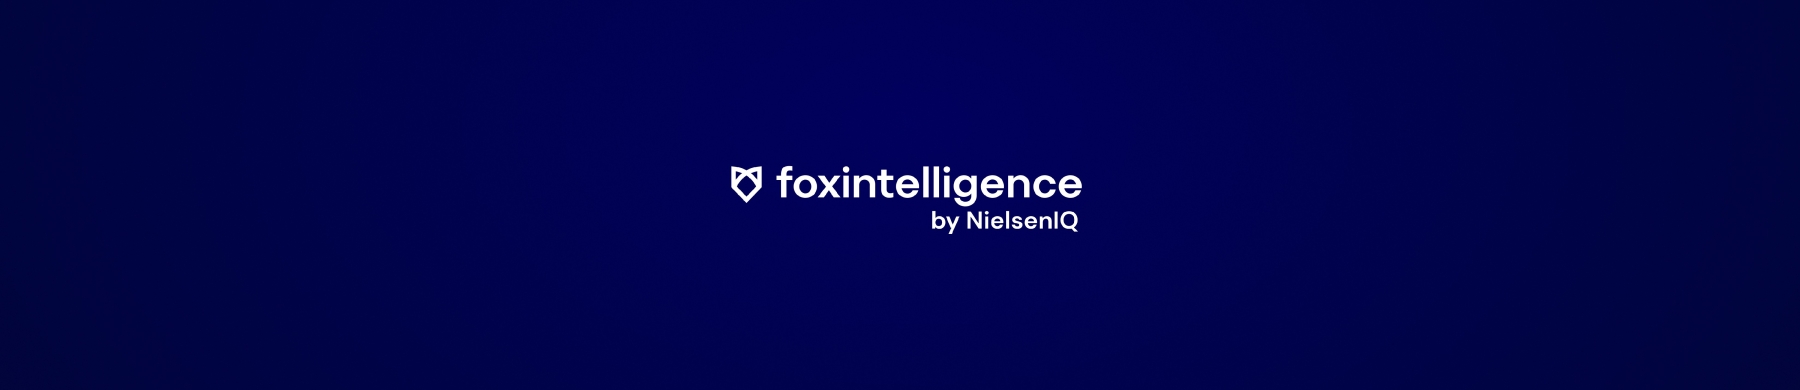 Foxintelligence - Bannière